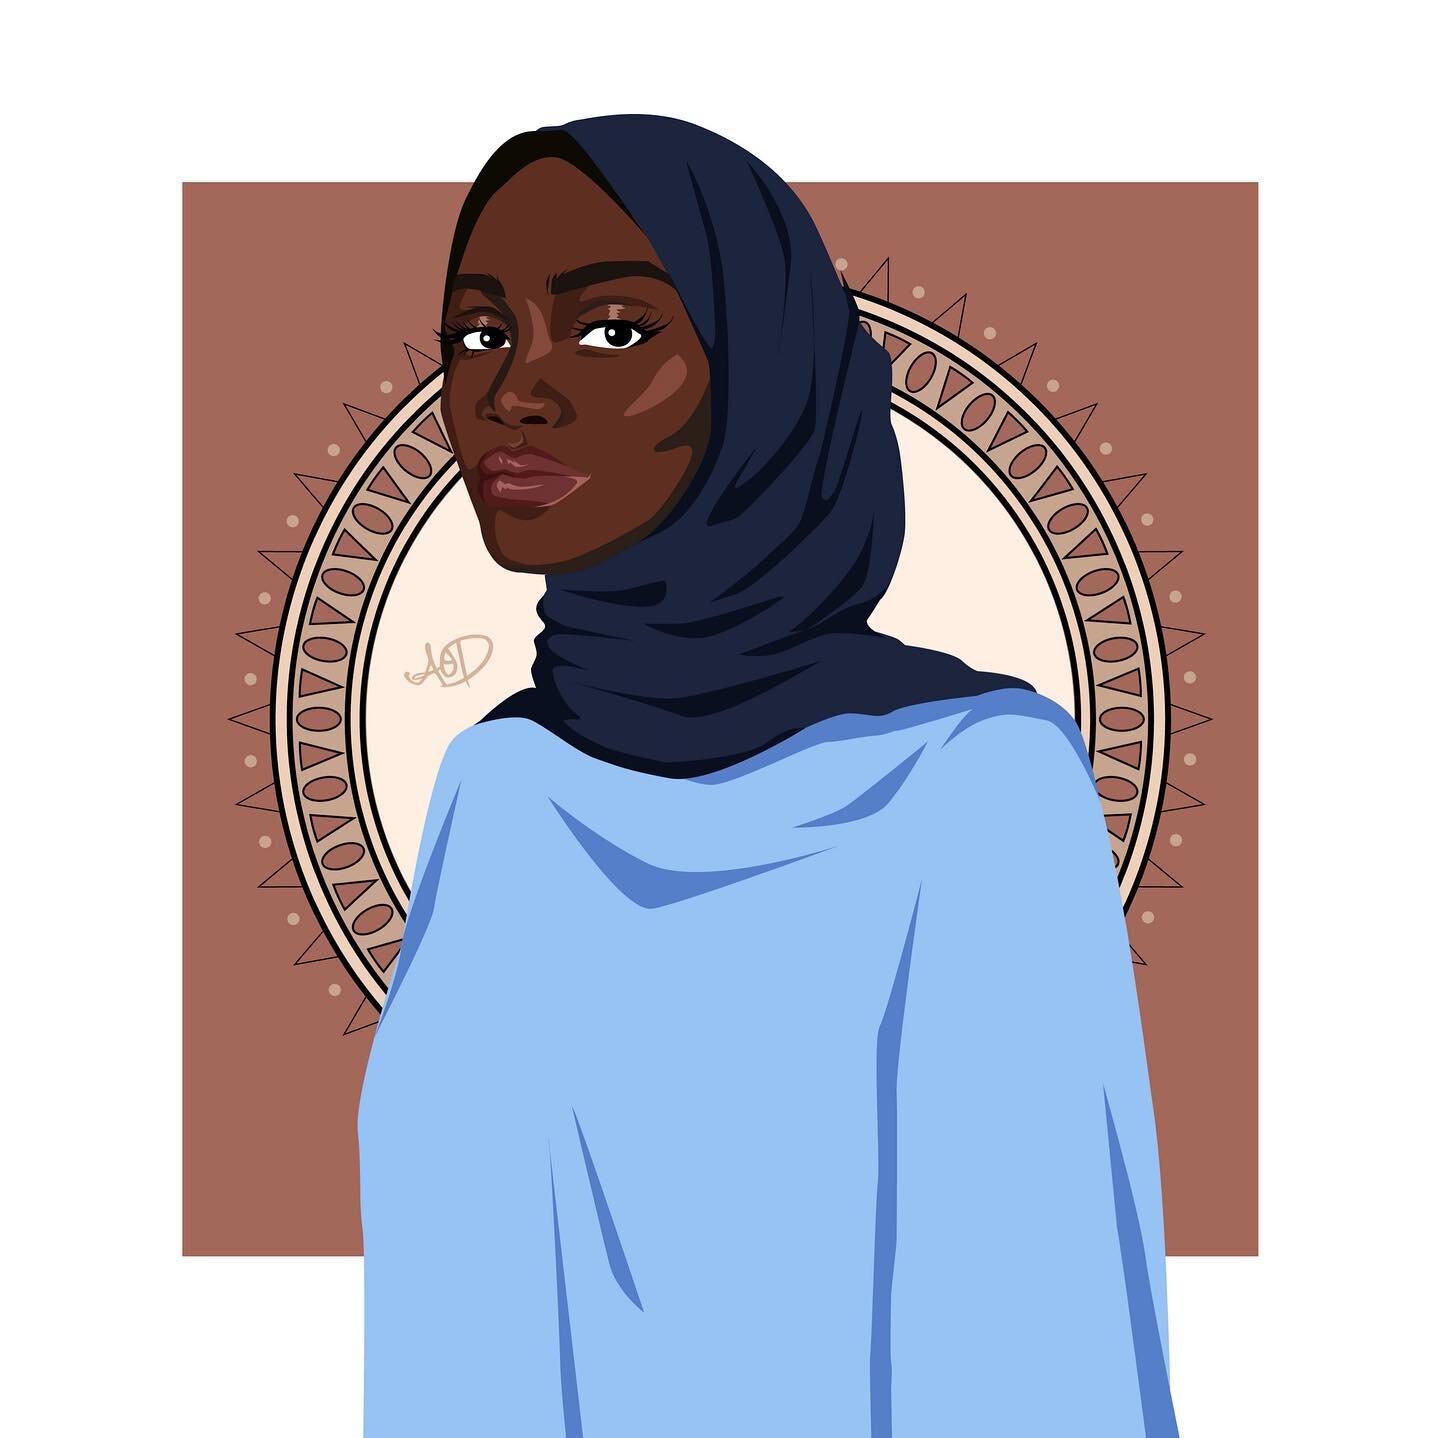 A new Melanin Queen. 👑 

#melaninqueen #digitalart #afro #hijab #digitalart #africandigitalart #creative #africaninspired #illustration #artwork #appreciateblack #art #vectorart #adobe #illustrator #supportblackartists #hijabi #blackartistspace #dra